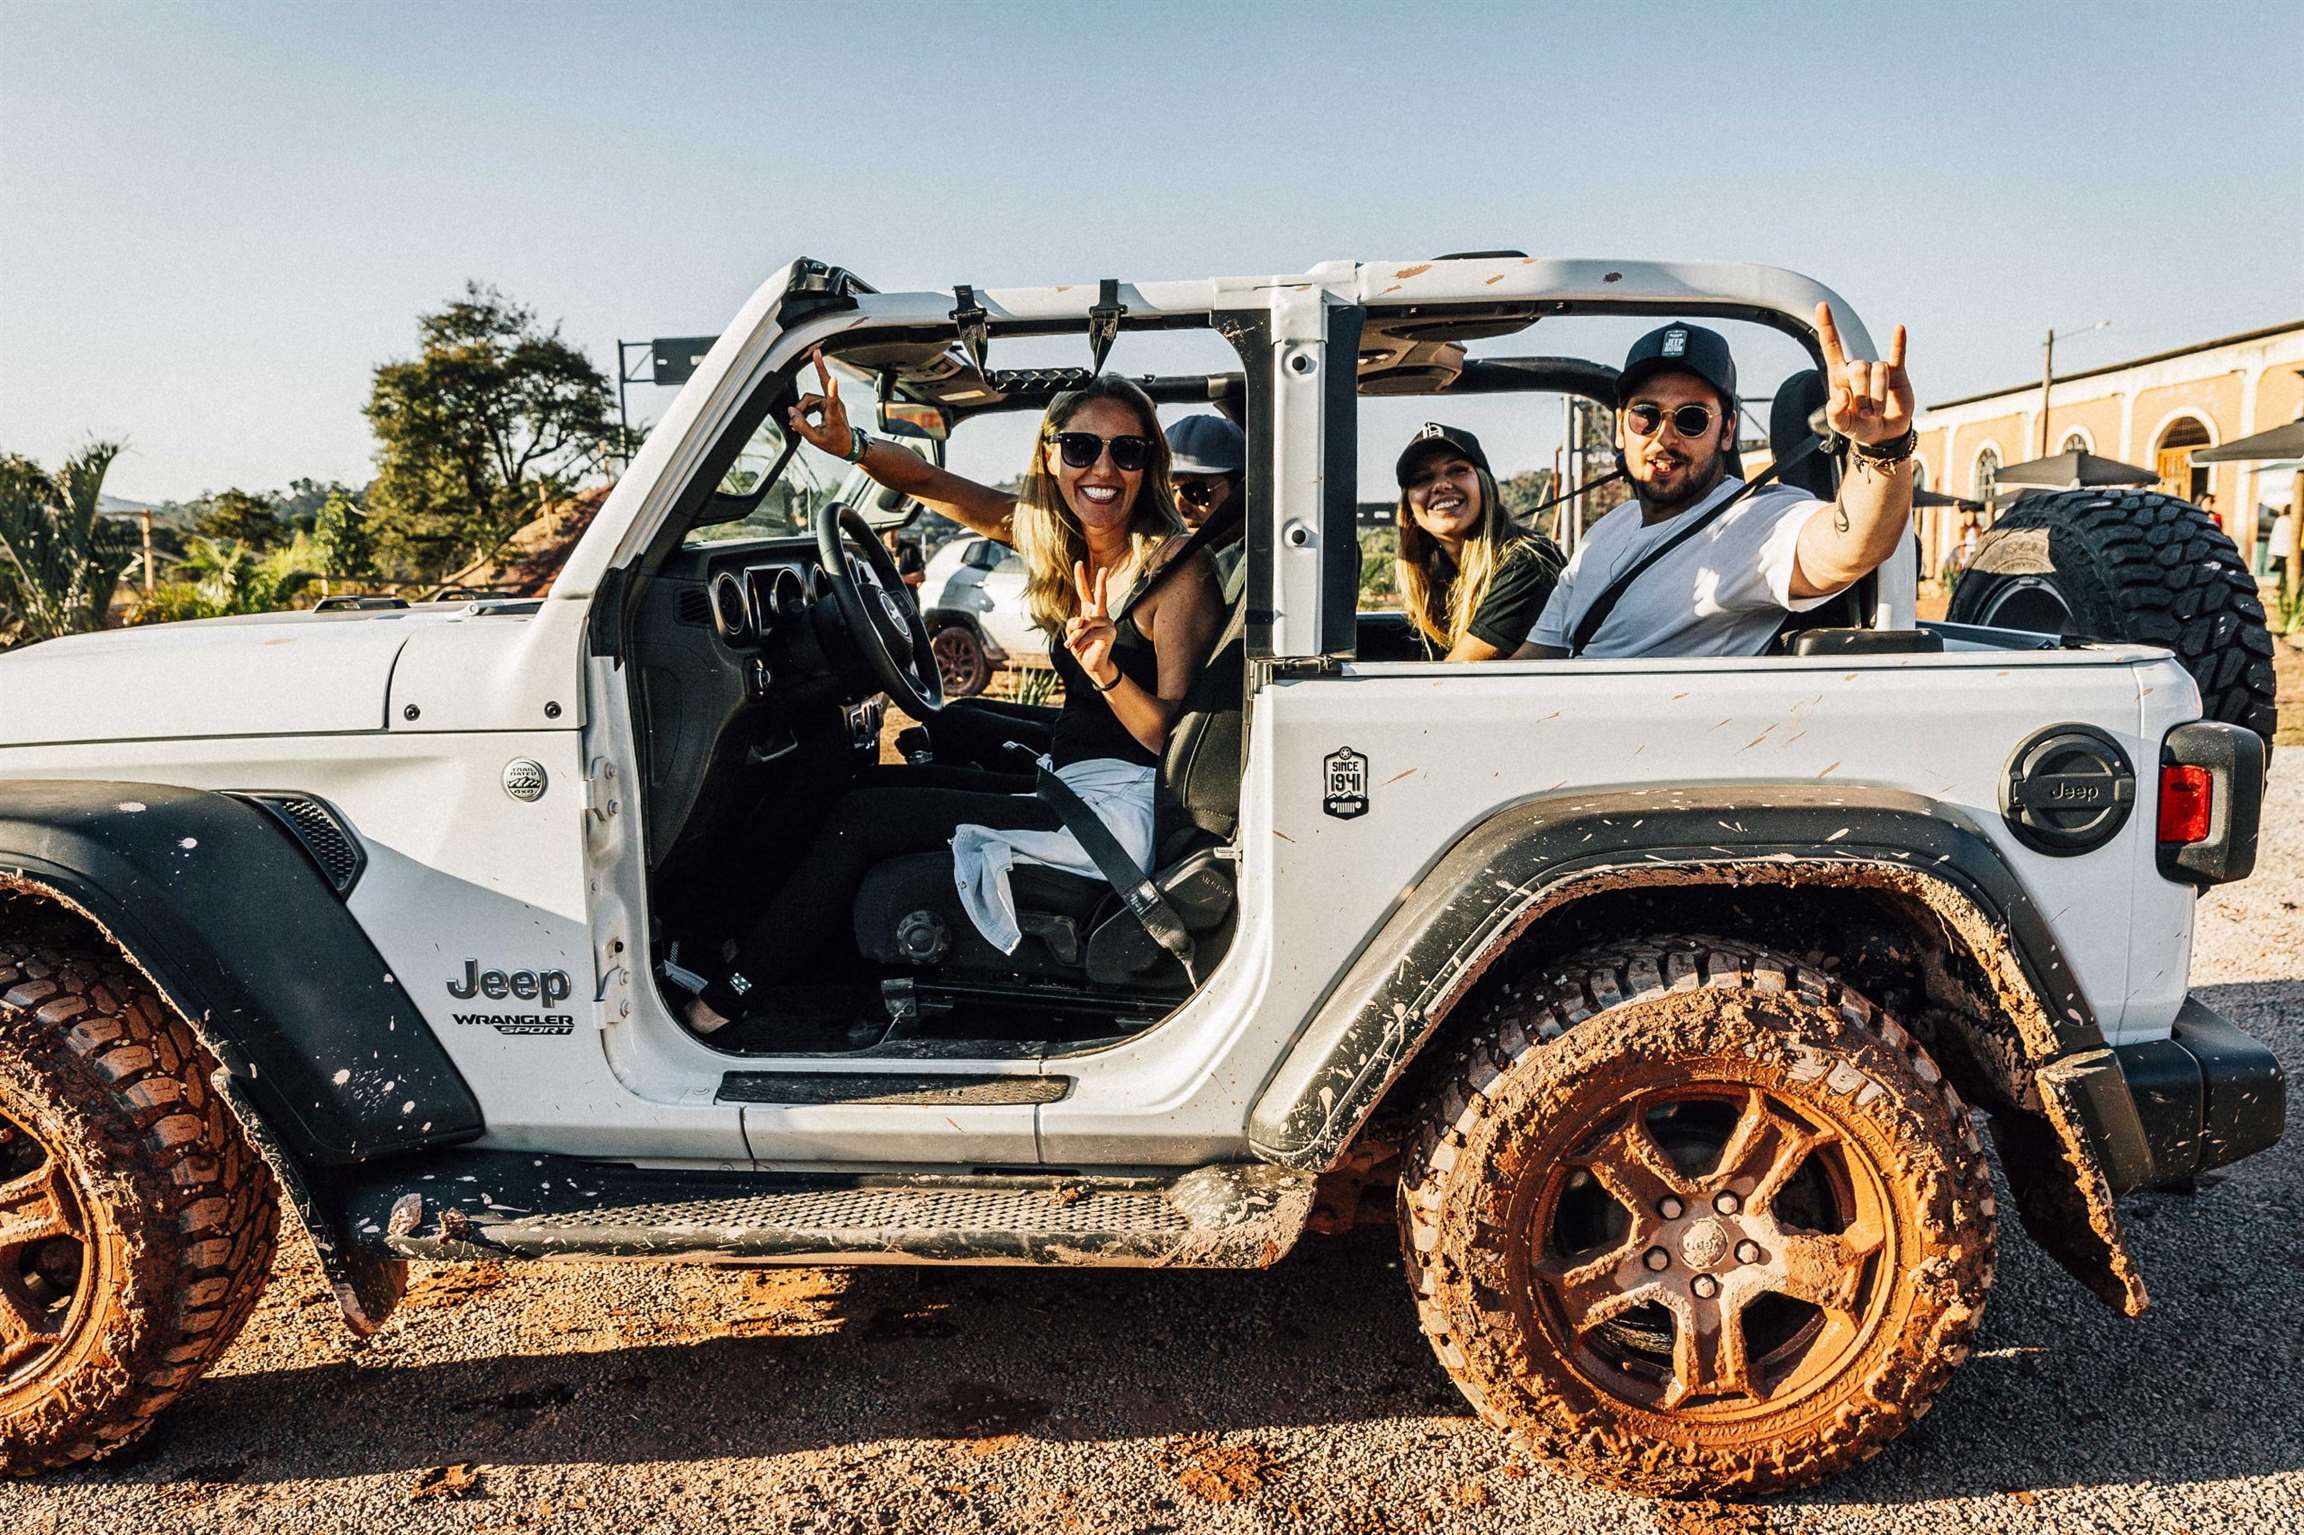 Jeep Camp oferece emoção e aventura